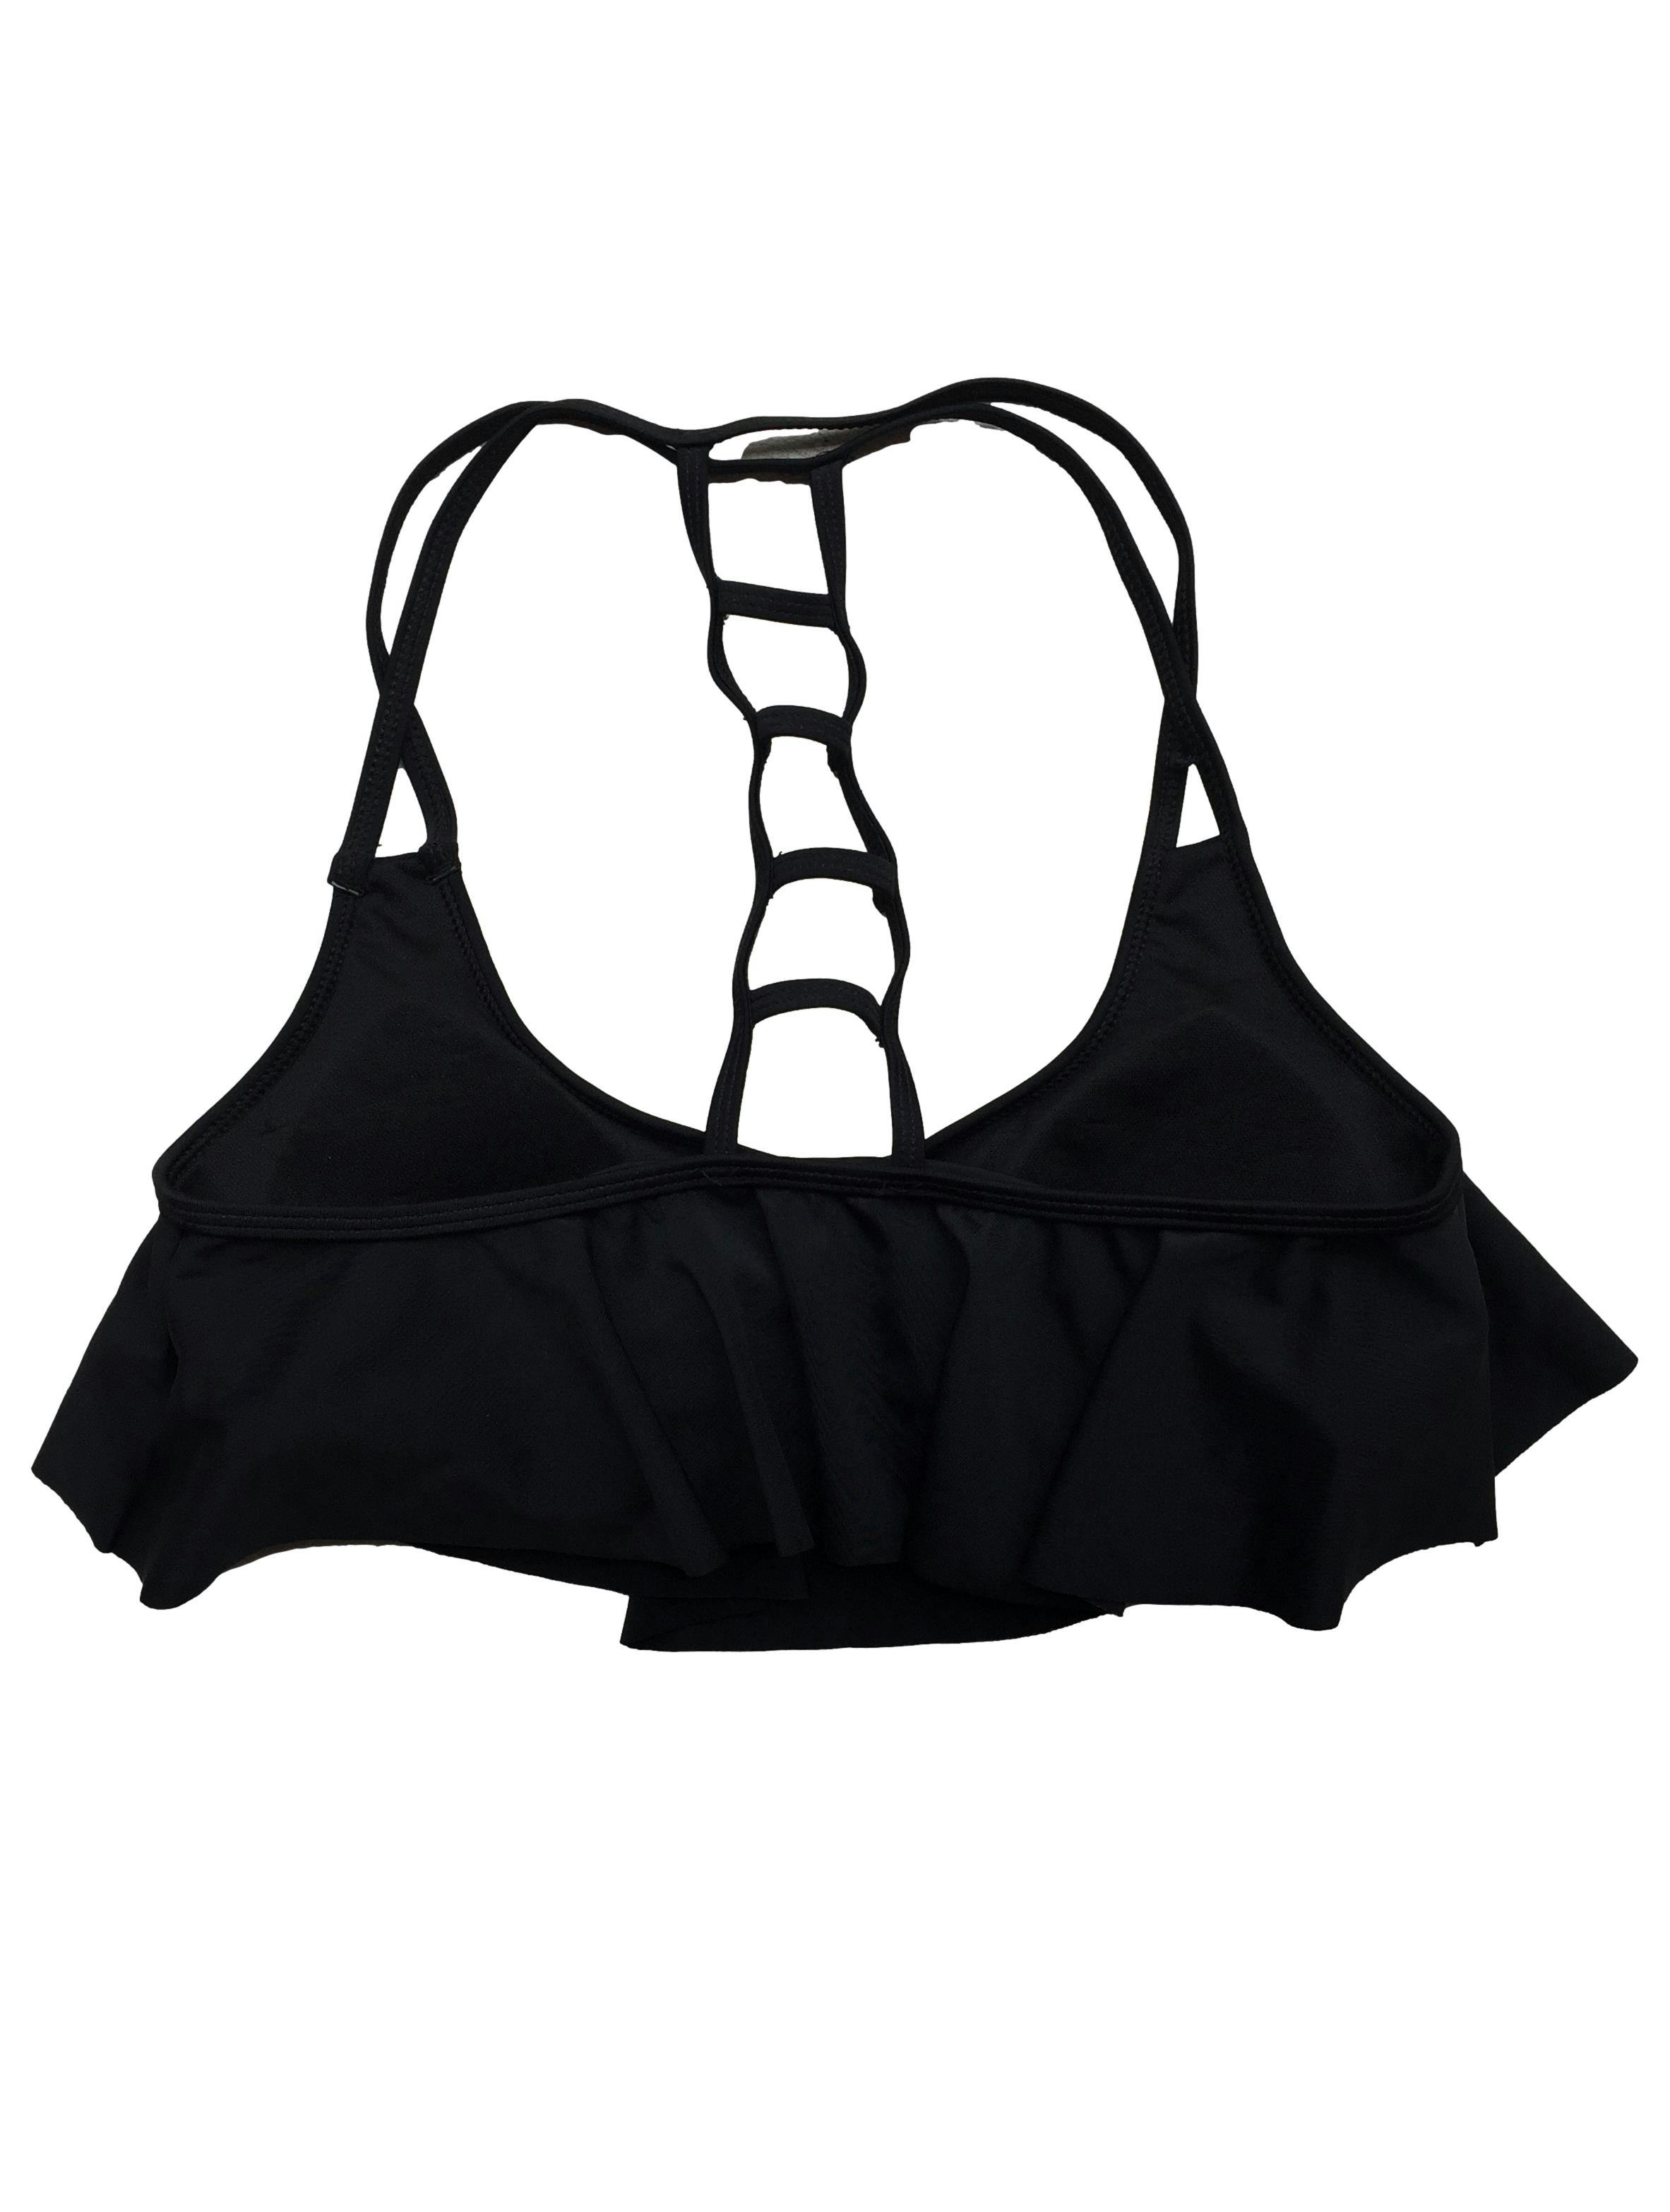 Parte superior de bikini Index negro, copas removibles, volante y tiras cruzadas. Busto: 70cm, Largo: 33cm. Nuevo con etiqueta.